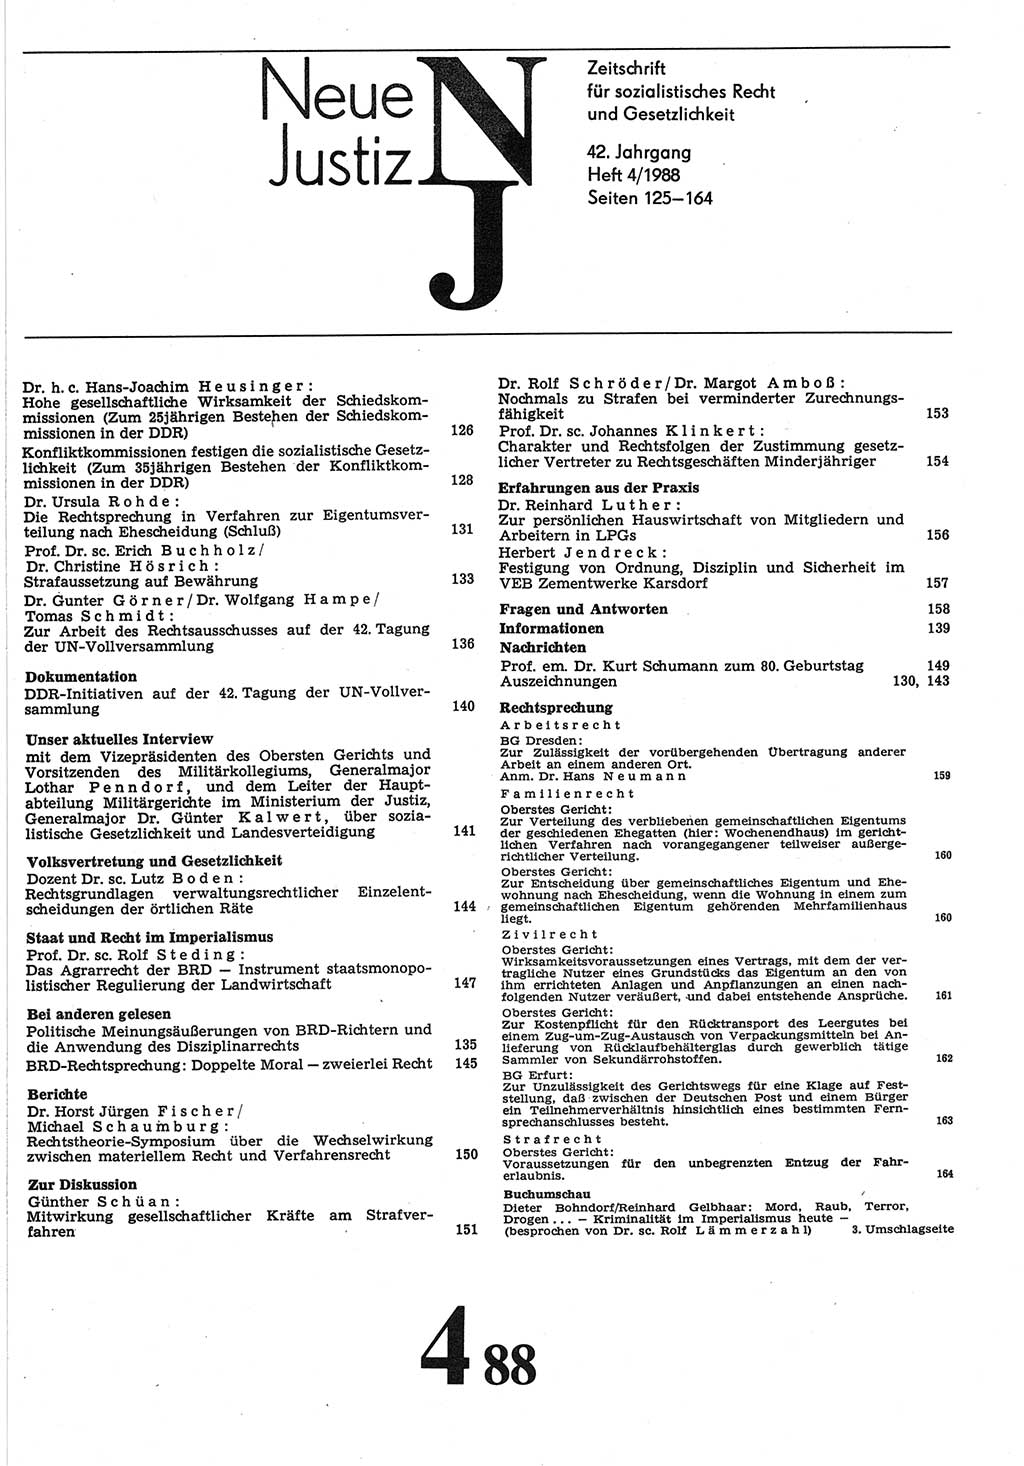 Neue Justiz (NJ), Zeitschrift für sozialistisches Recht und Gesetzlichkeit [Deutsche Demokratische Republik (DDR)], 42. Jahrgang 1988, Seite 125 (NJ DDR 1988, S. 125)